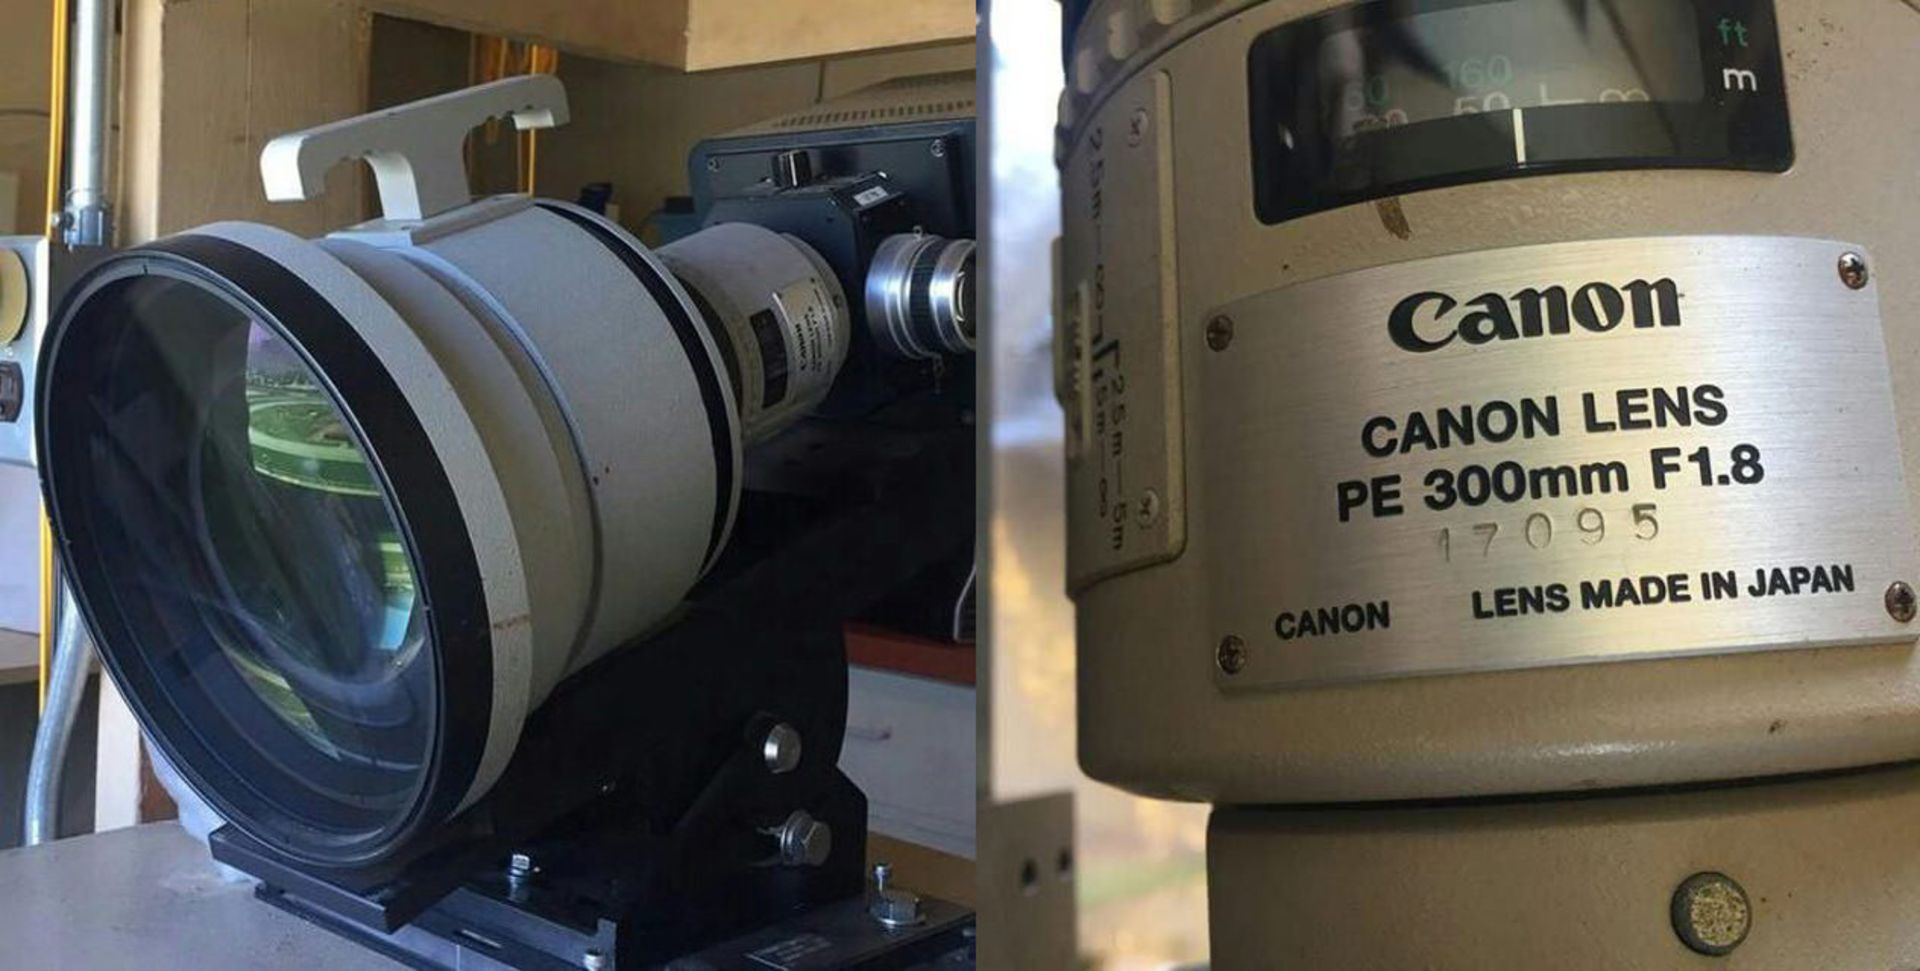 مرجع متخصصين ايران لنز نادر Canon 300mm f/1.8 كانن